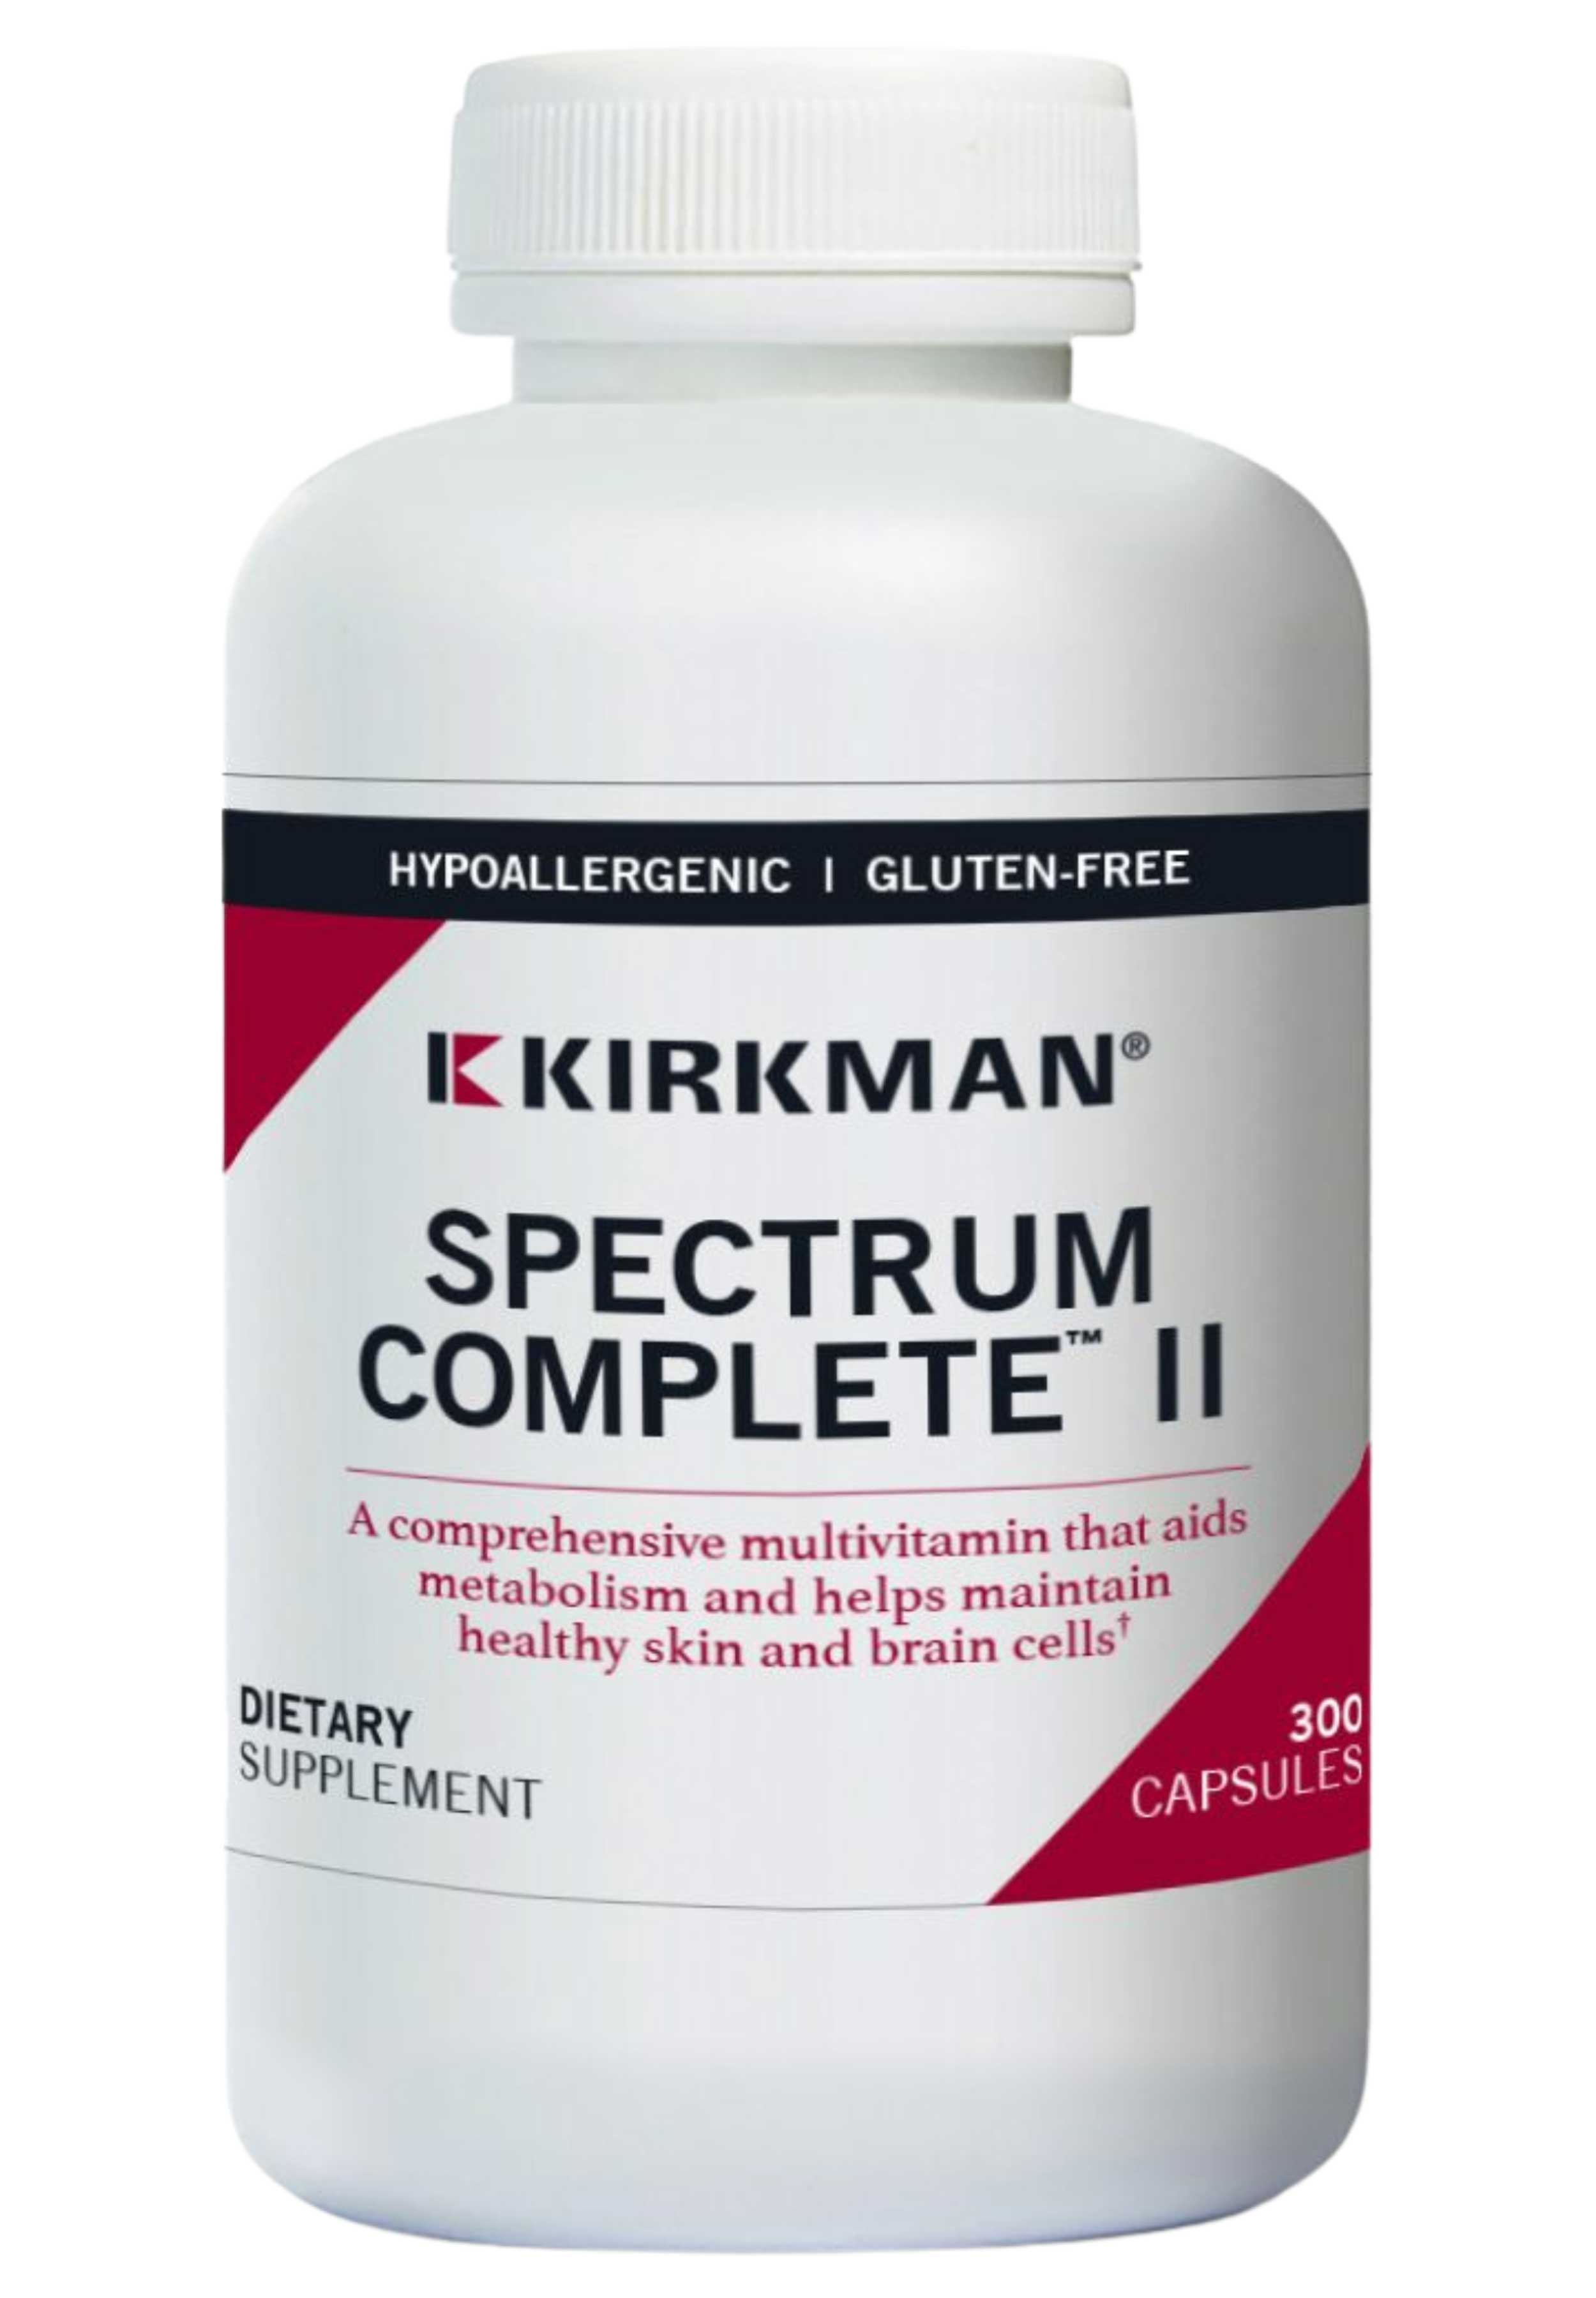 Kirkman Spectrum Complete II